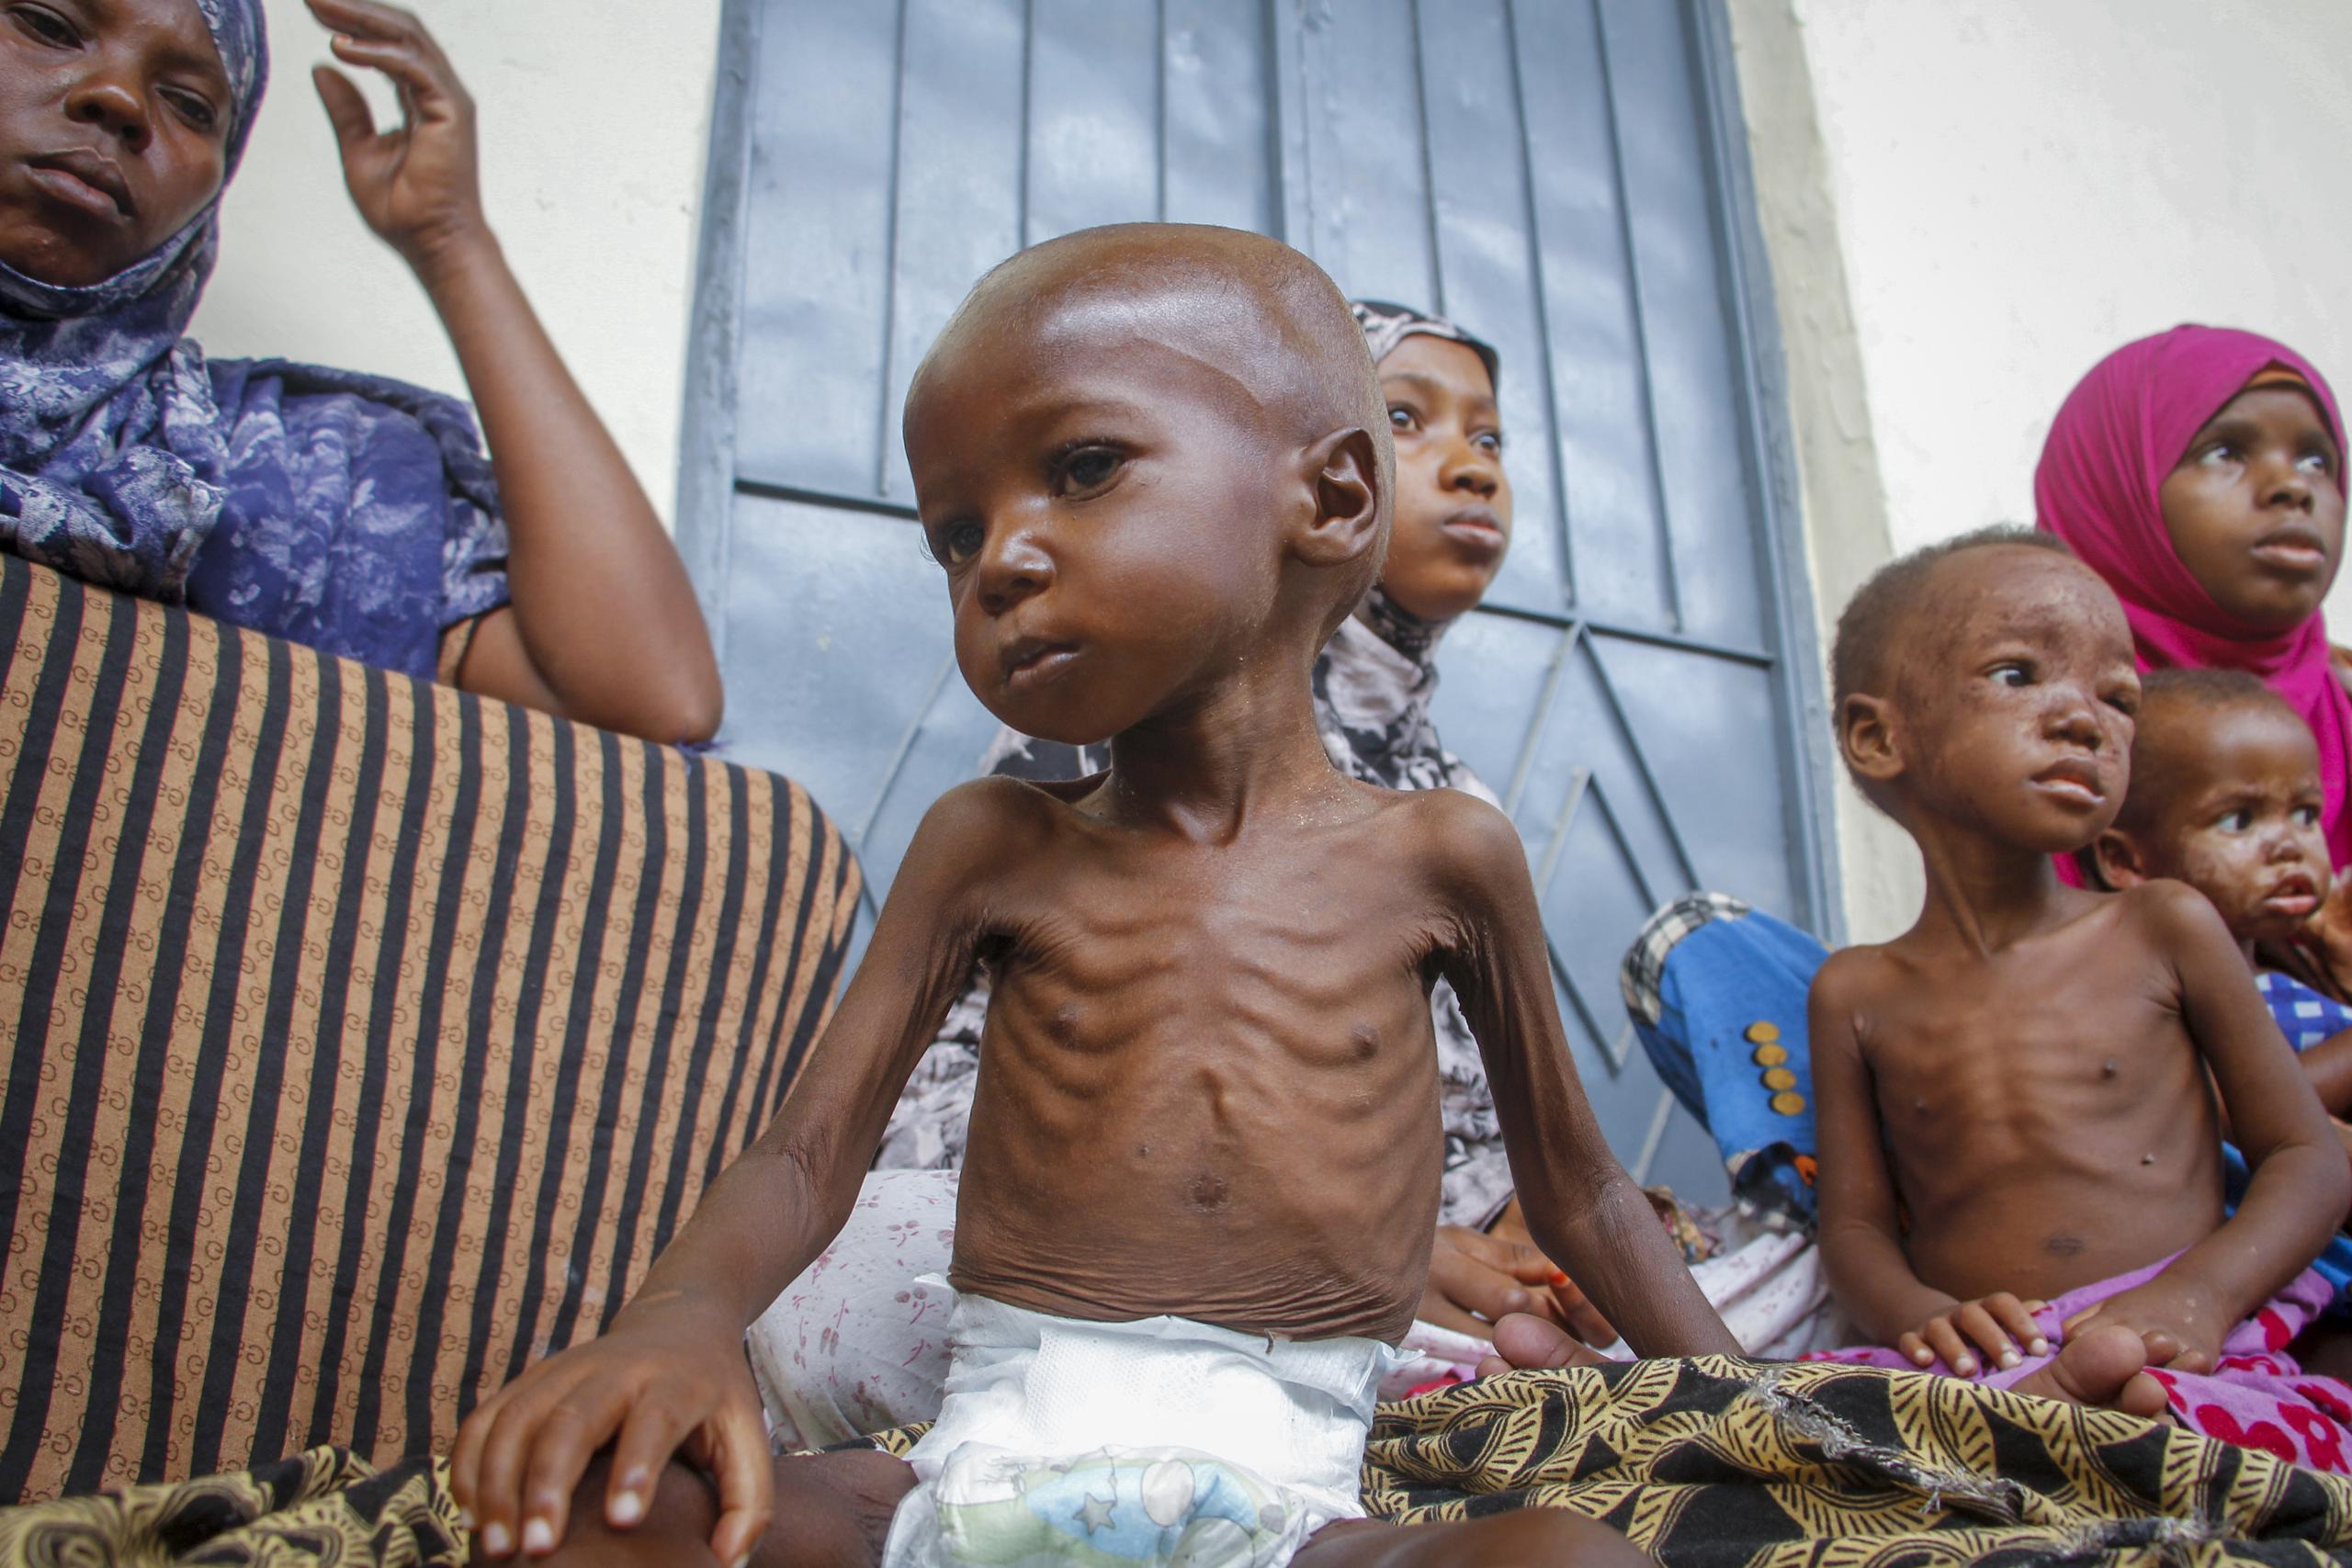 Un niño desnutrido de dos años, sentado junto a su madre, desplazados por la sequía en un centro para la desnutrición gestionado por Acción contra el Hamnre, en Mogadiscio, Somalia, el 5 de junio de 2022. Datos inéditos compartidos con The Associated Press muestran que al menos 448 personas murieron este año en los centros de tratamiento de la desnutrición solo en Somalia. (AP Foto/Farah Abdi Warsameh)